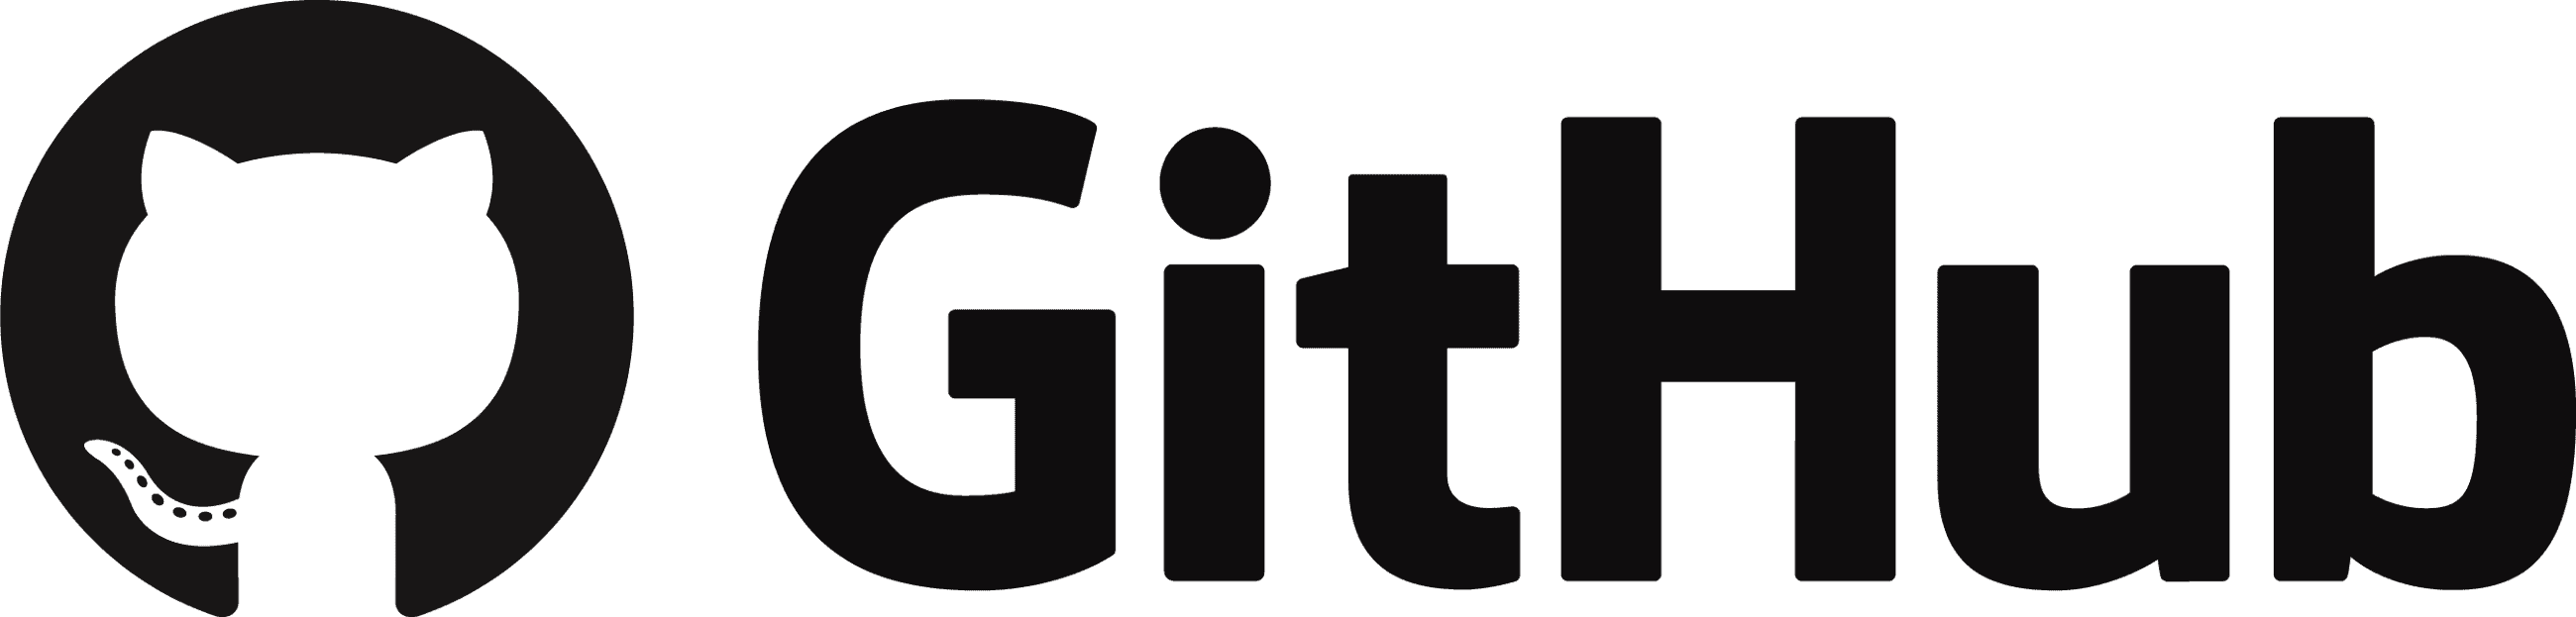 Github Logo Download PNG Image